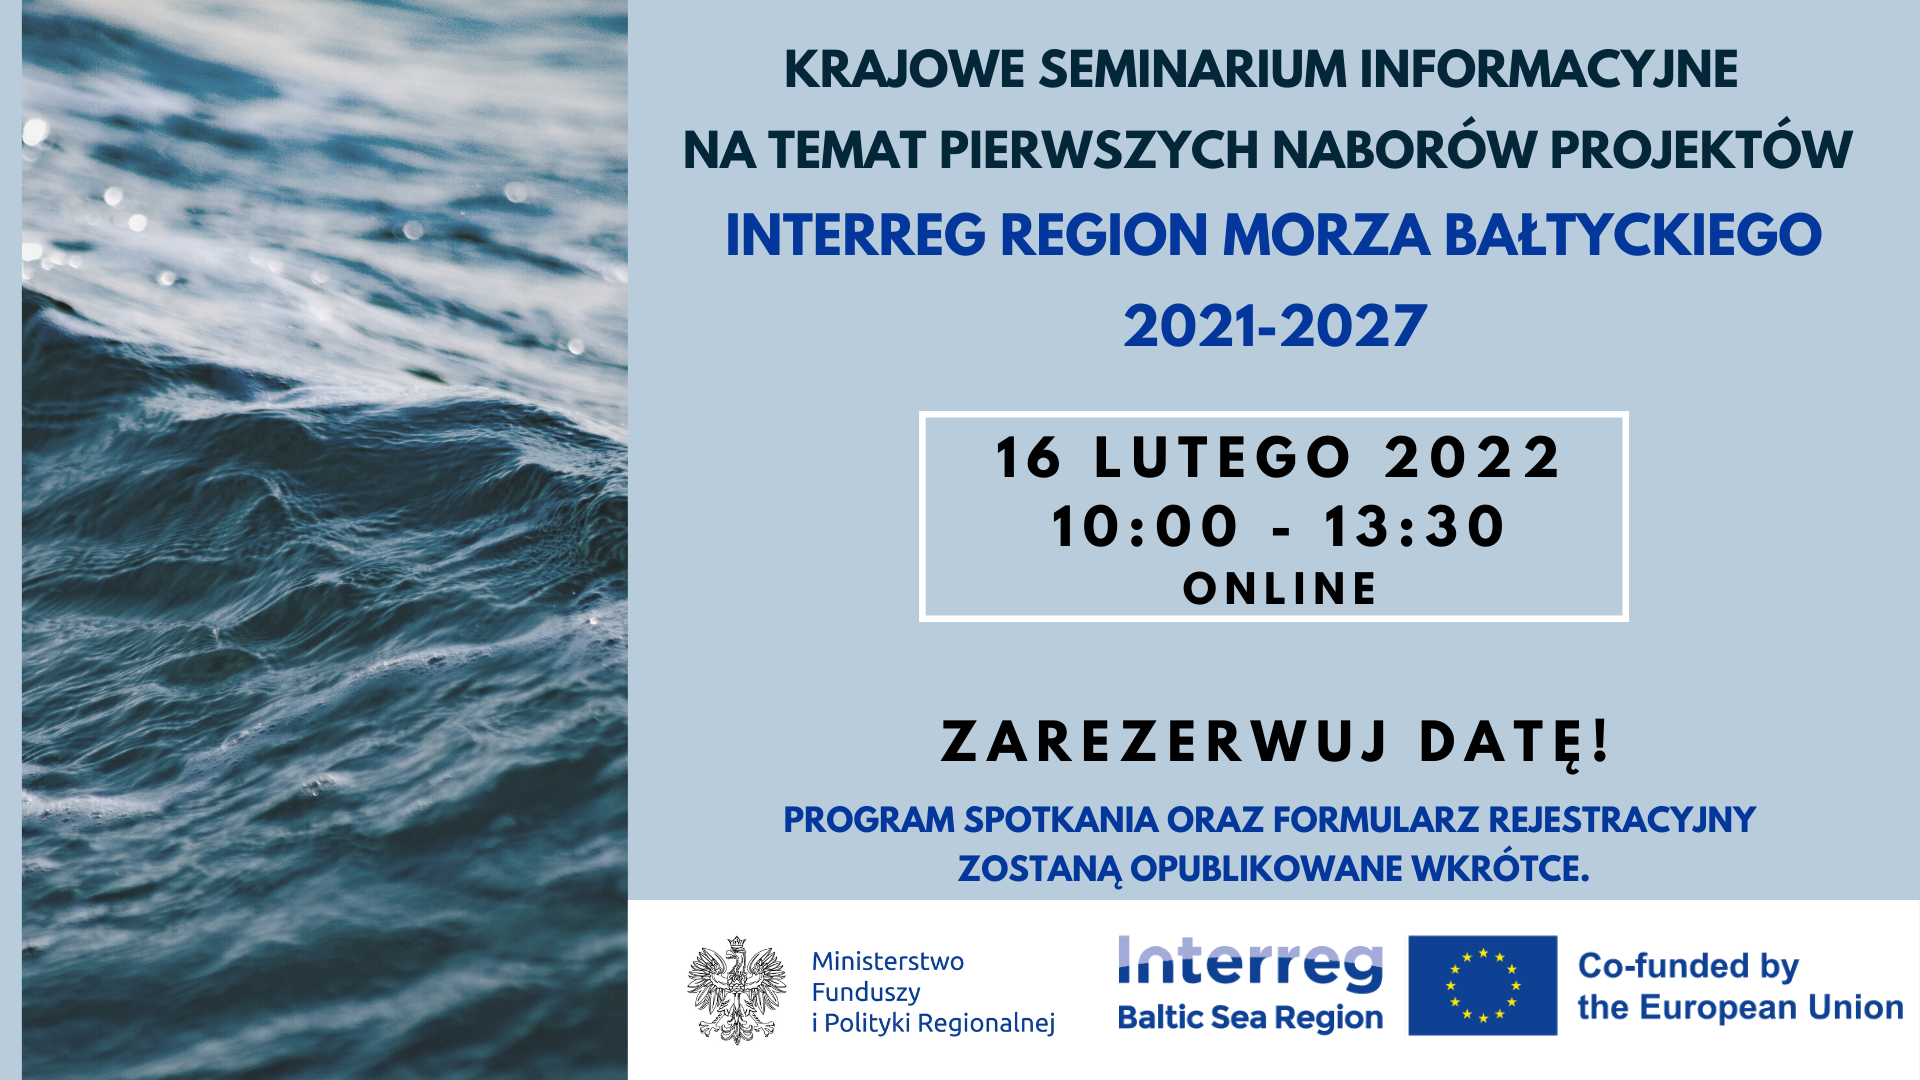 Krajowe seminarium informacyjne na temat pierwszych naborów projektów Interreg Region Morza Bałtyckiego 2021-2027, które odbędzie się 16.02.2022r. w godzinach 10.00-13.30 w formie online. Program spotkania oraz formularz rejestracyjny zostaną opublikowane wkrótce.